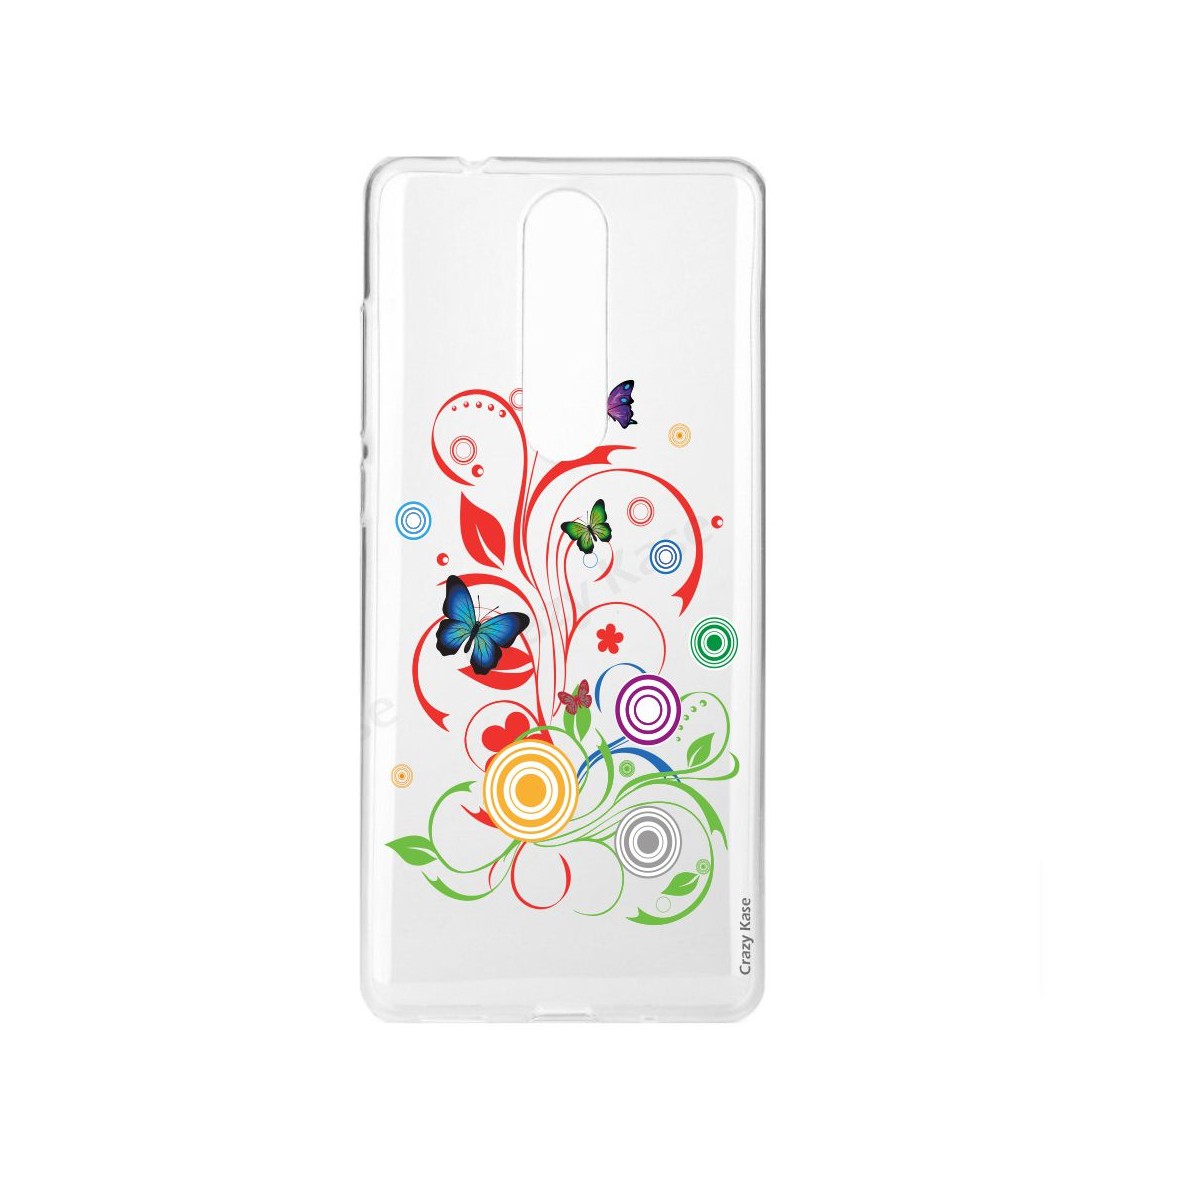 Coque compatible Nokia 5.1 souple motif Papillons et Cercles - Crazy Kase